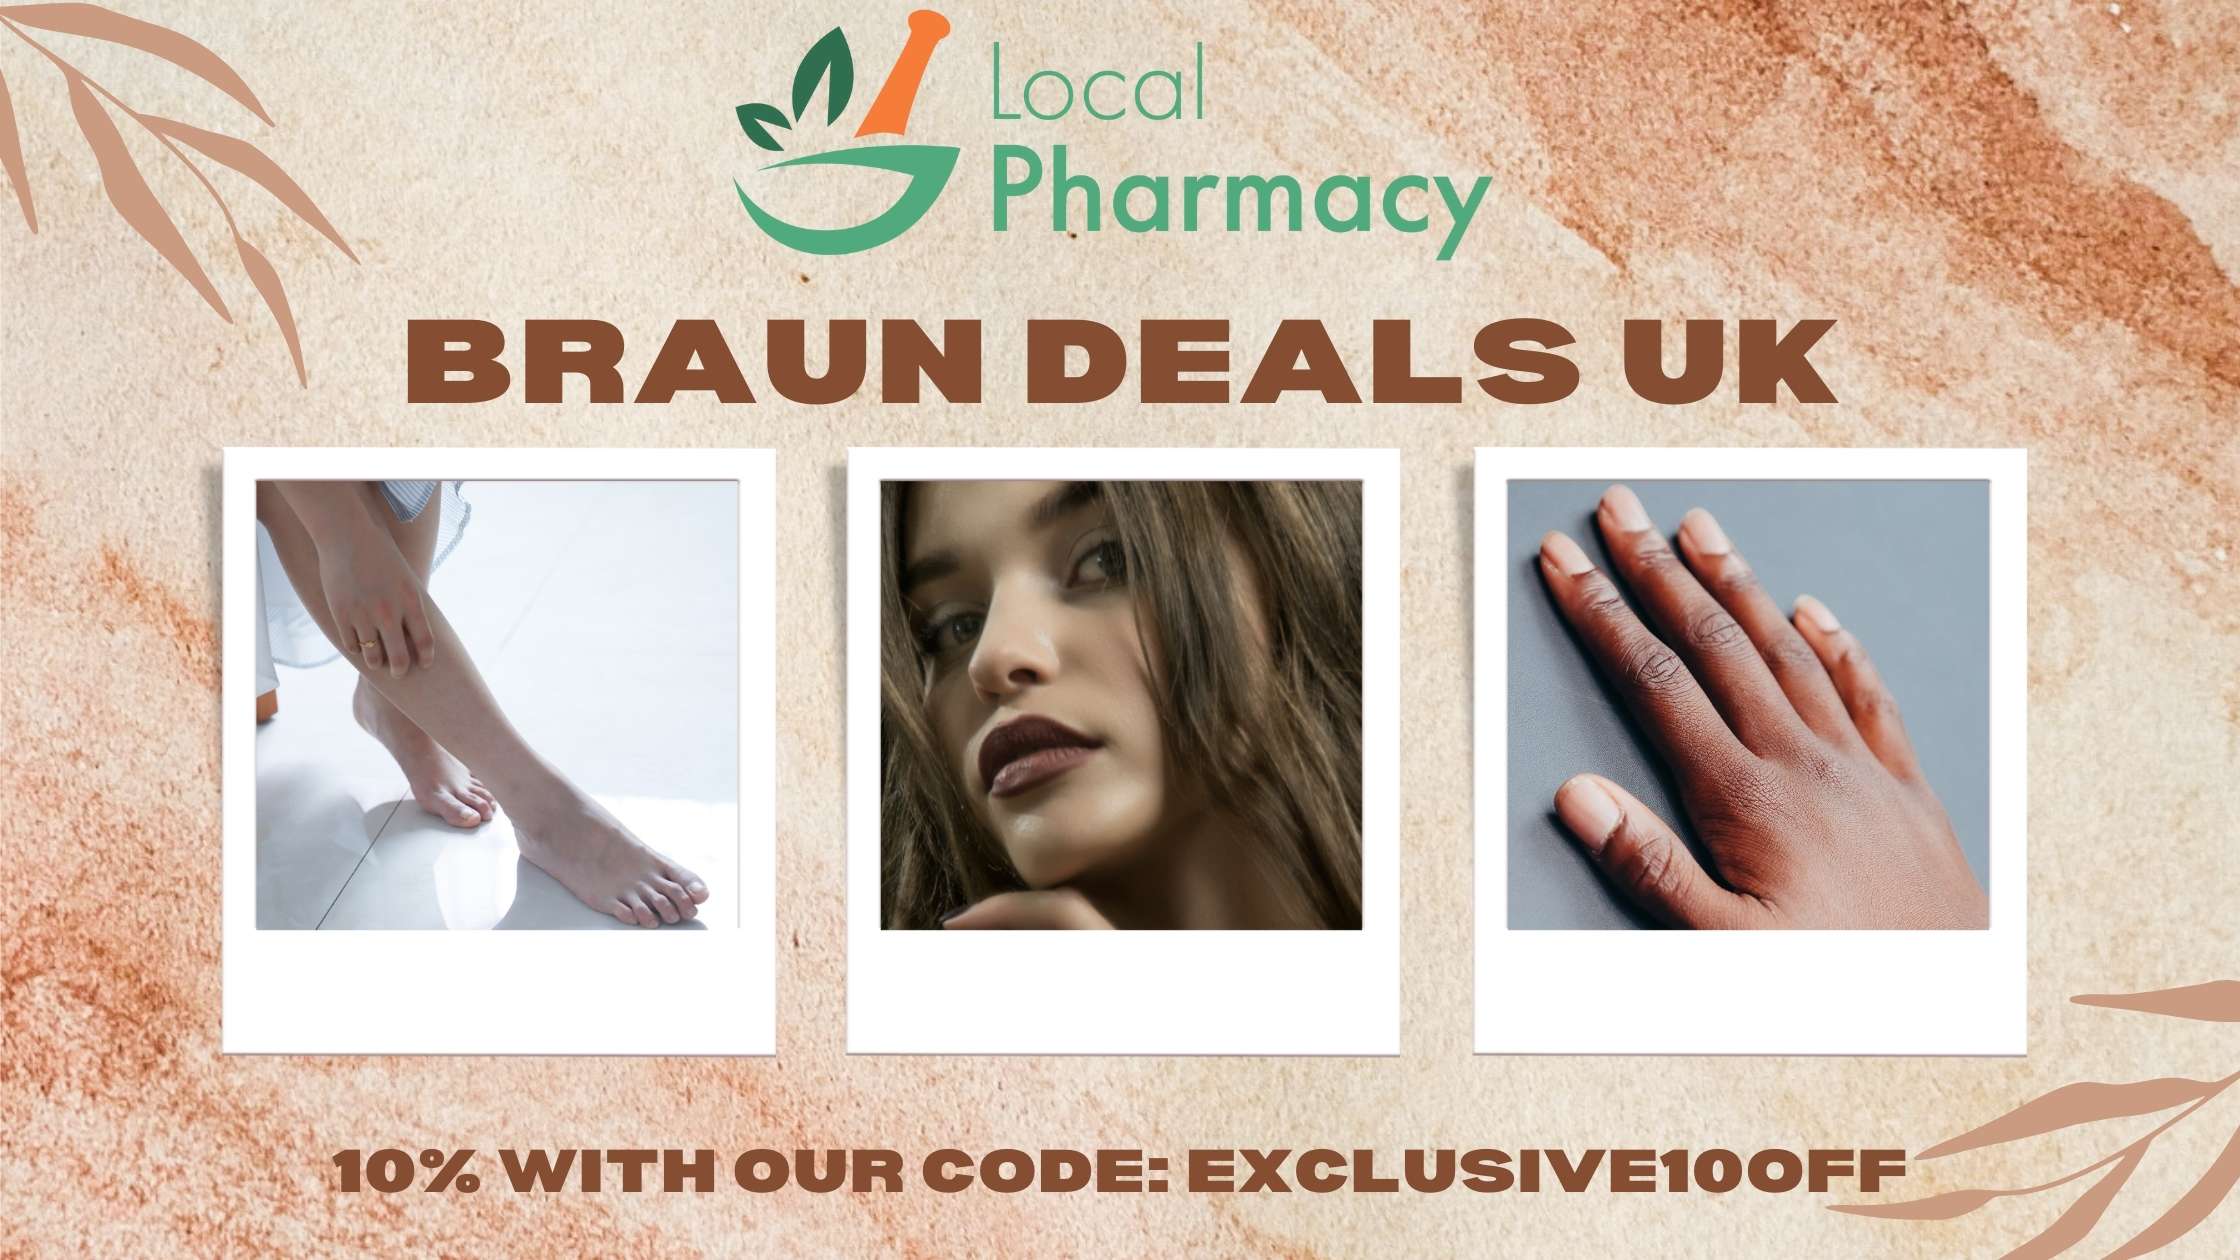 Braun coupon code and deals uk